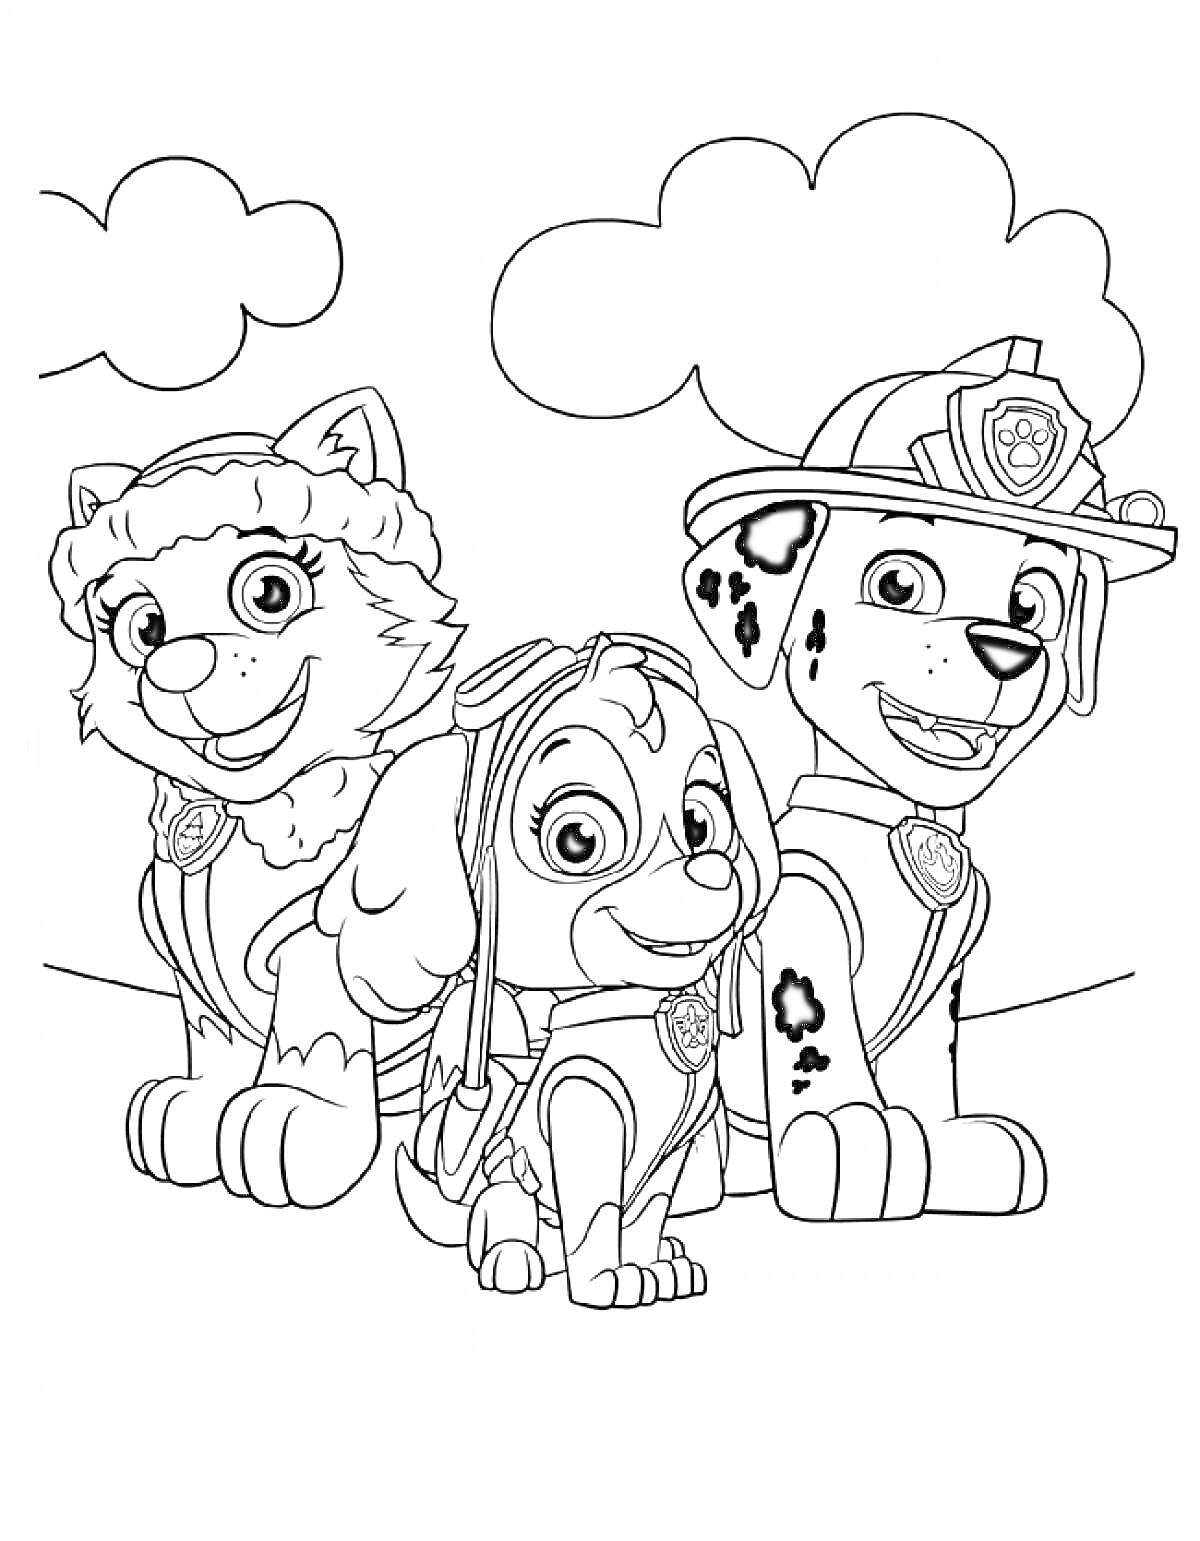 Щенячий Патруль - три щенка: девочка-хаски, девочка-кокапу, далматинец в форме пожарного, облака